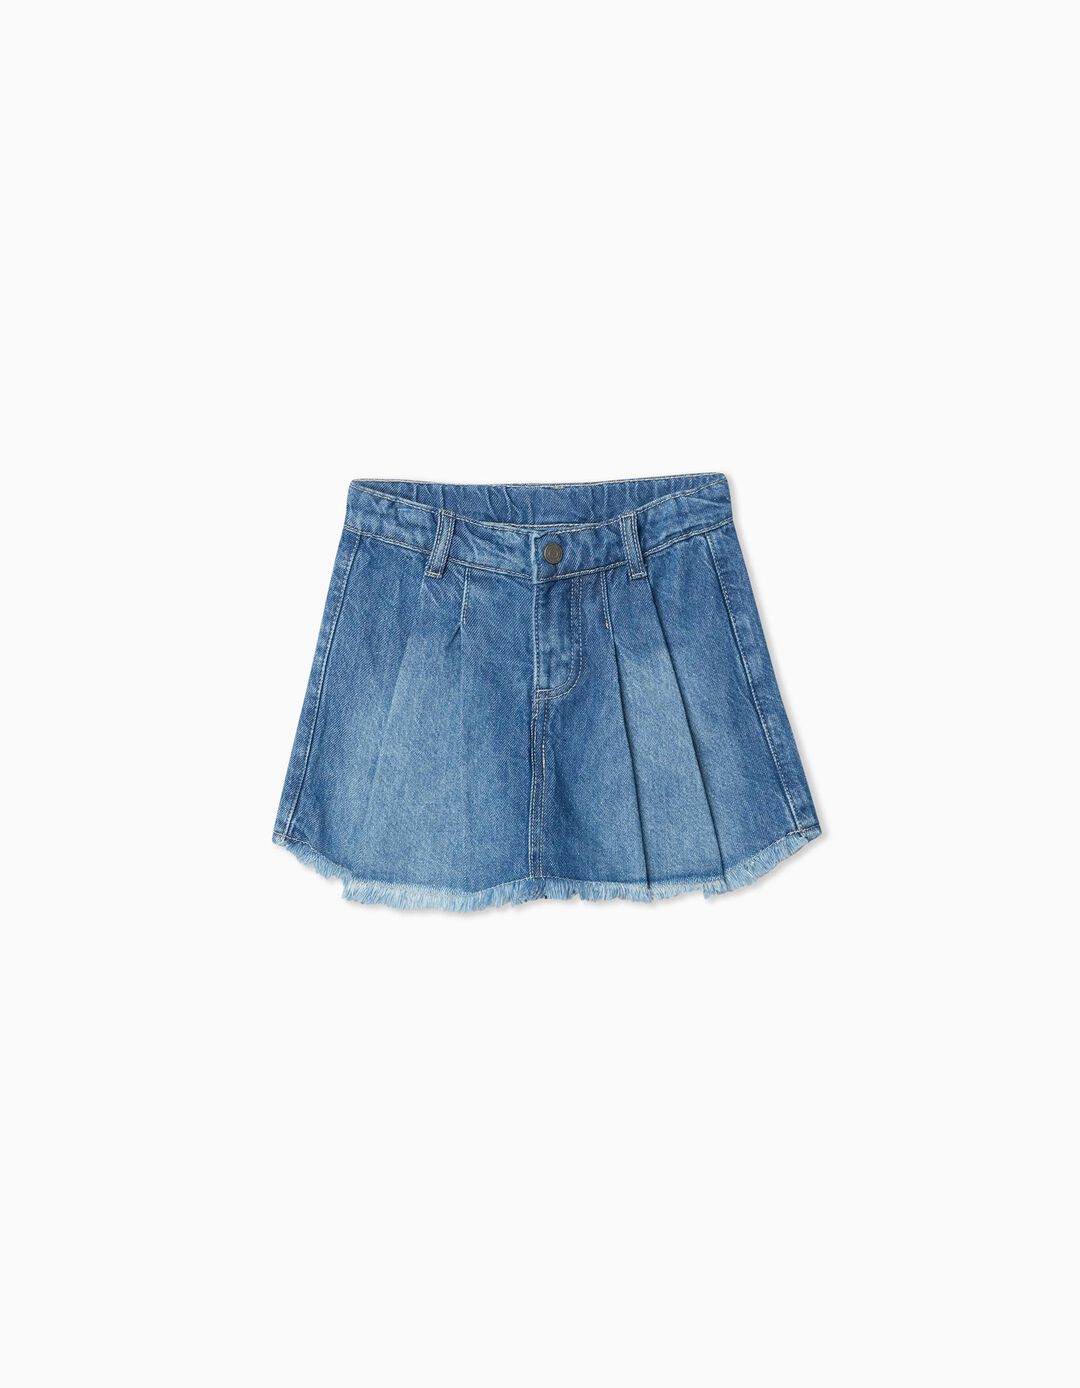  Denim skirt-shorts, girl, blue